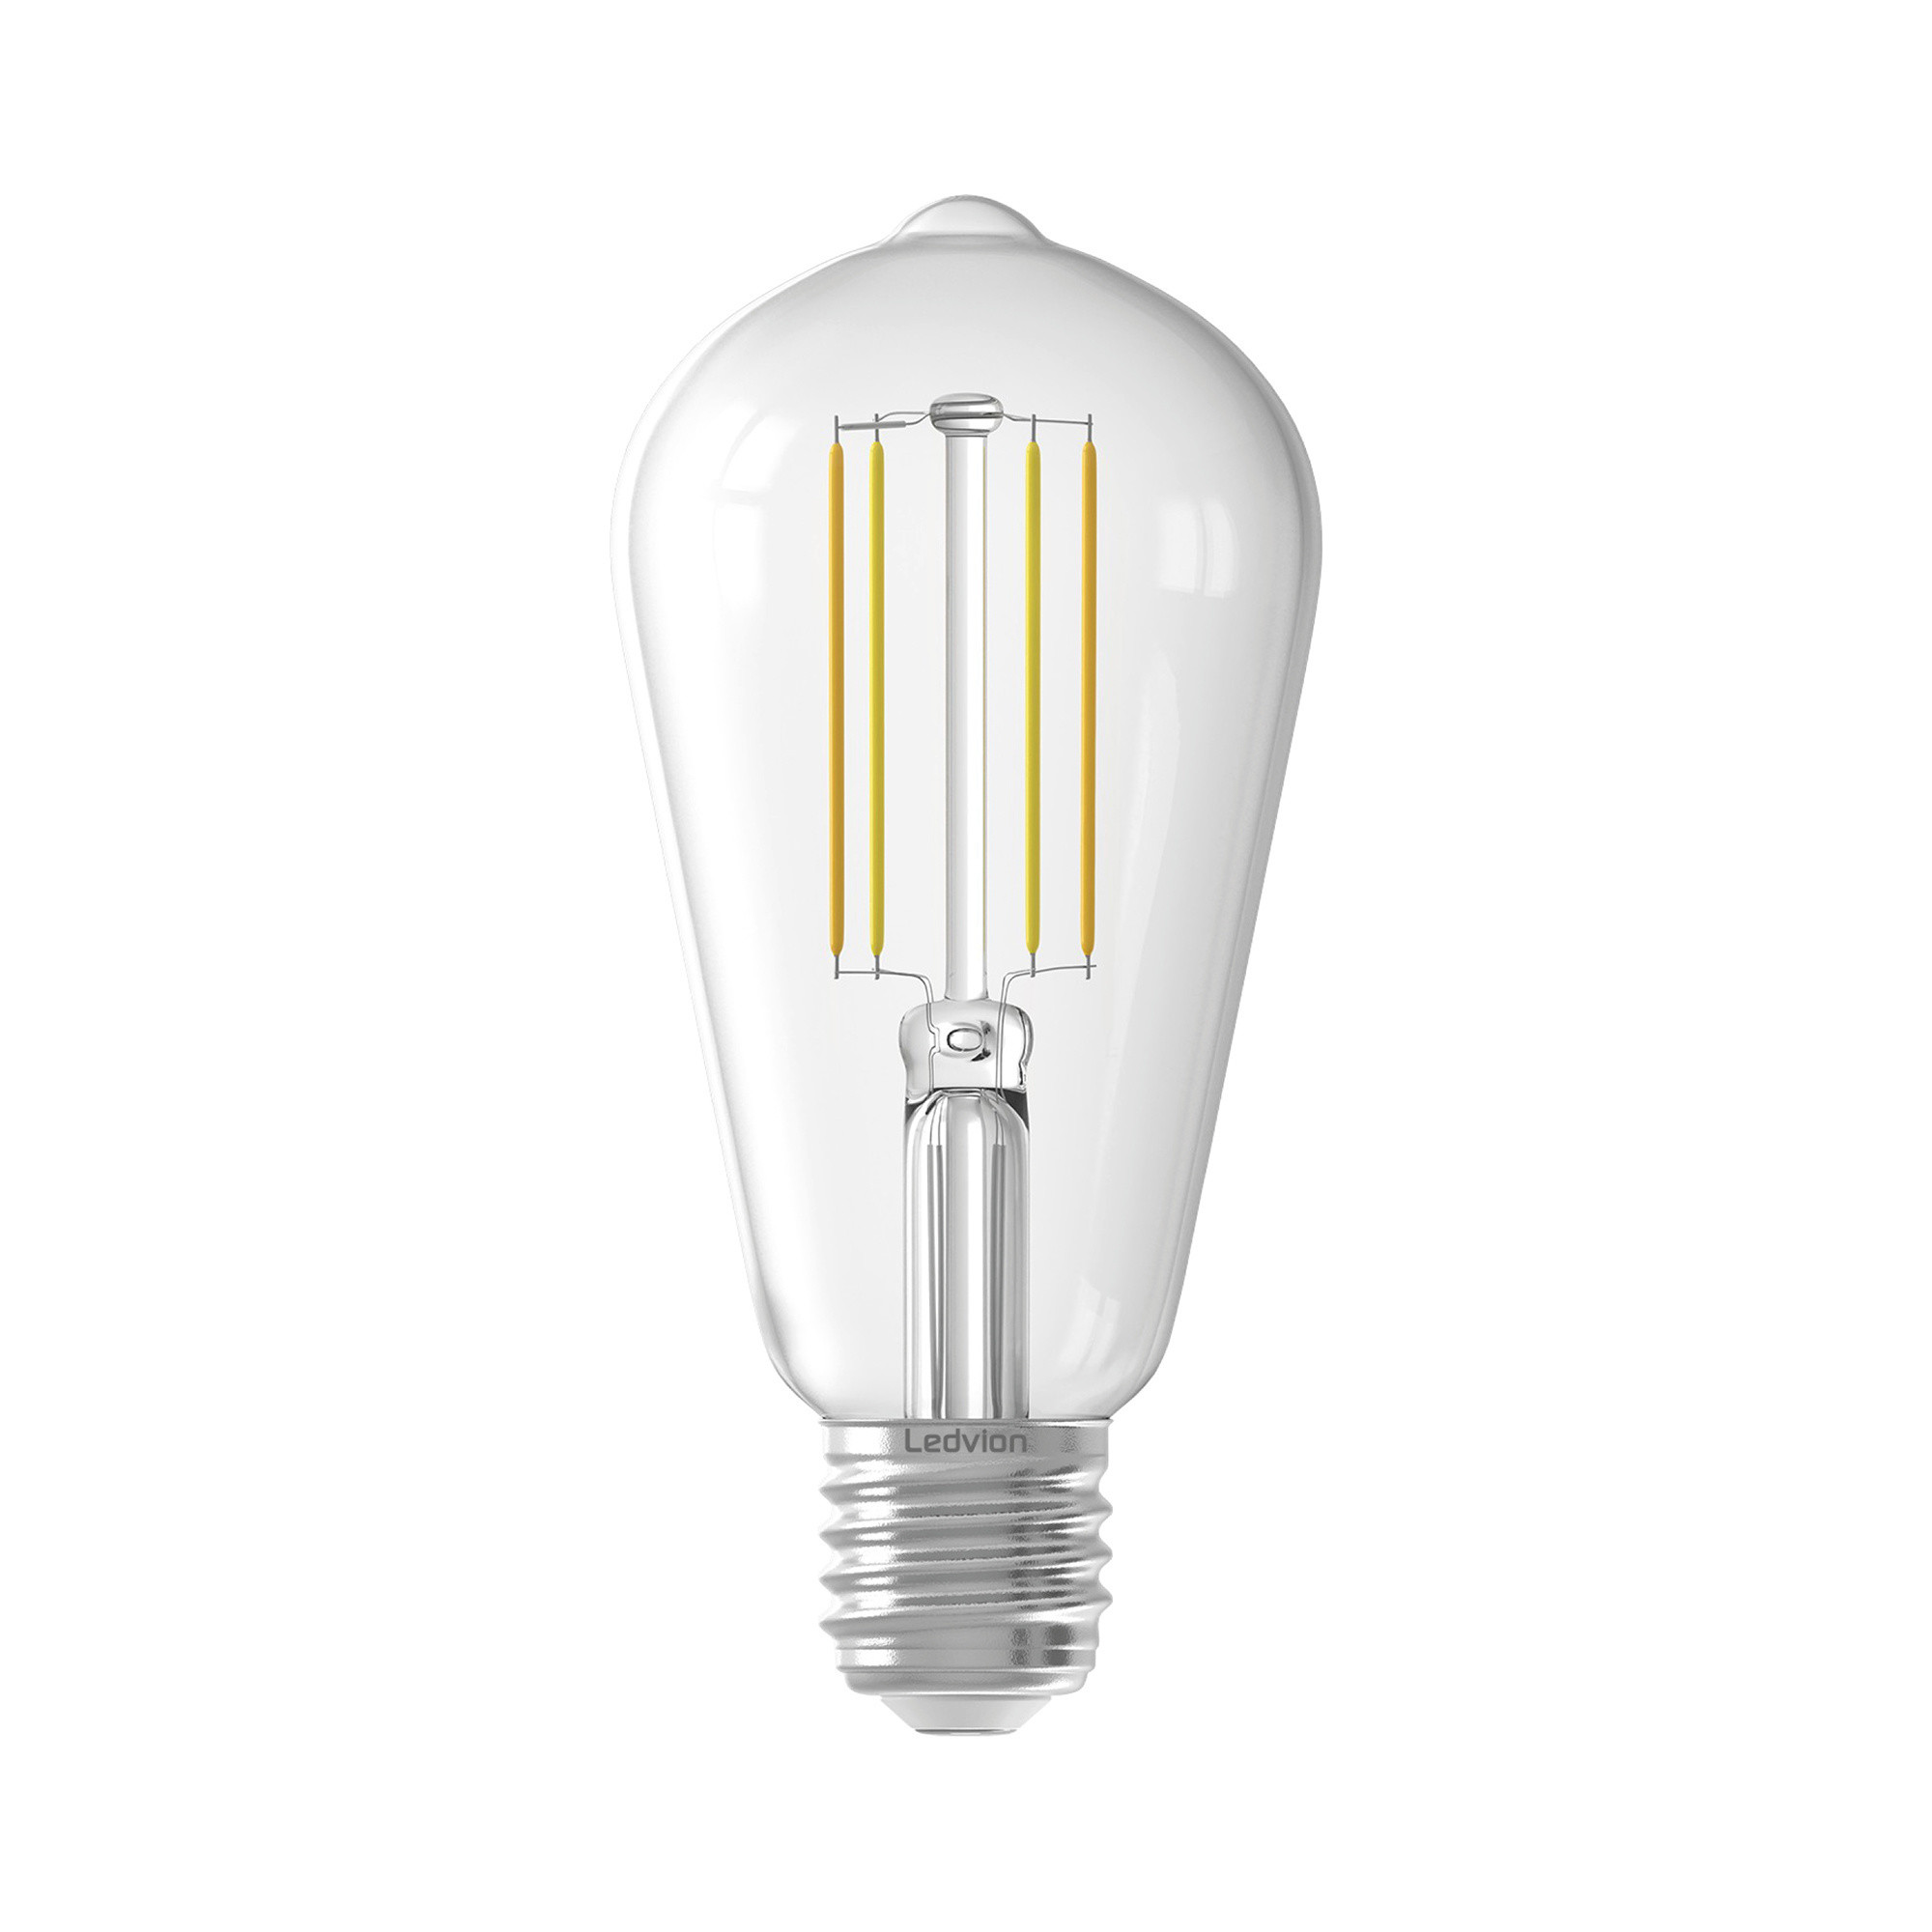 Ledvion Dimbare E27 LED Lamp - 4.5W - 2300K - 470 Lumen - Lightexpert.nl